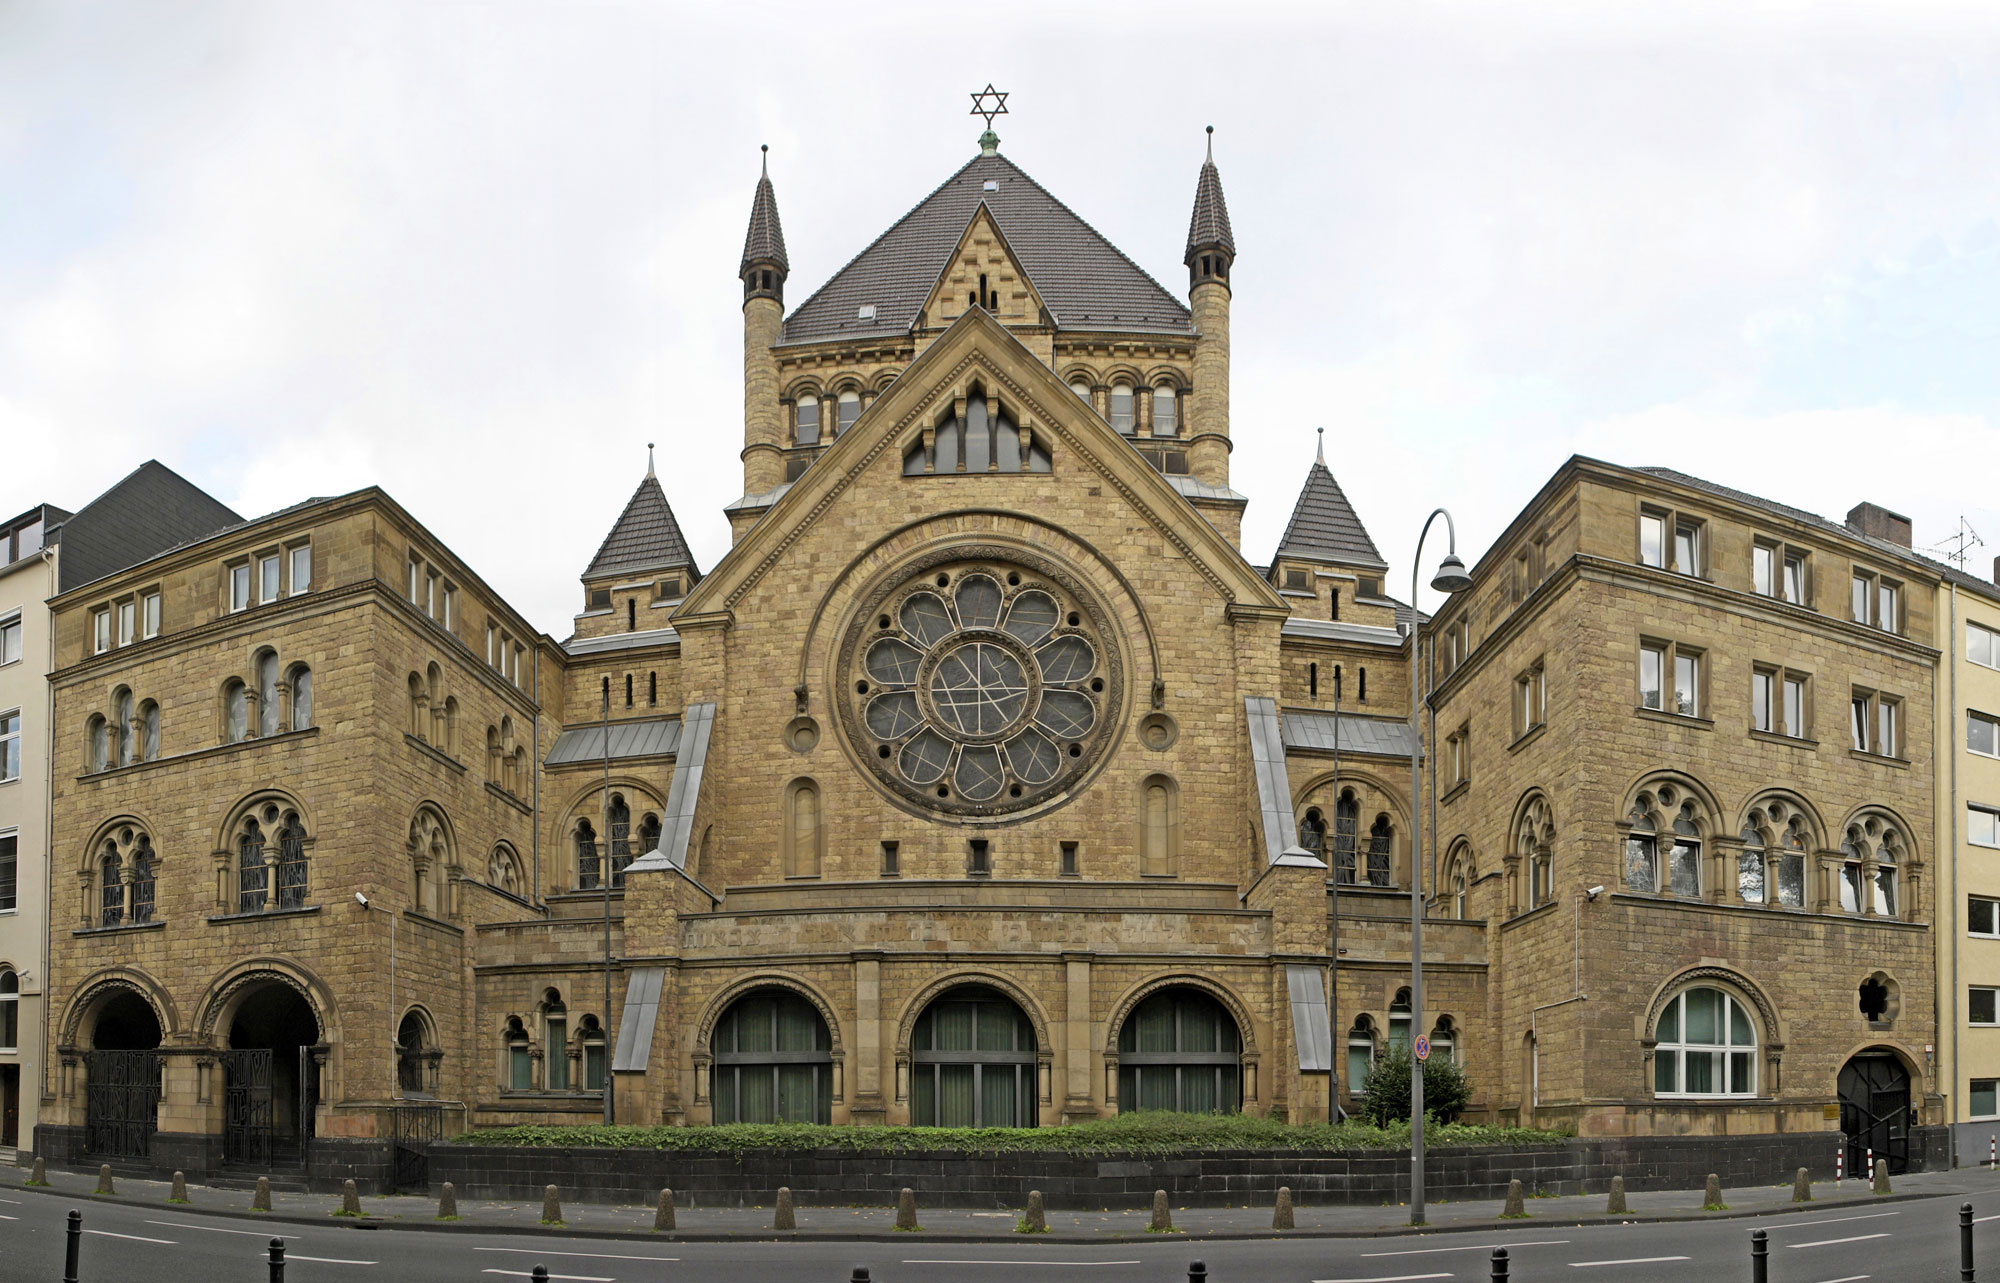 ACK Köln und Stadtdechant Robert Kleine verurteilen Angriffe auf Synagogen und Antisemitismus